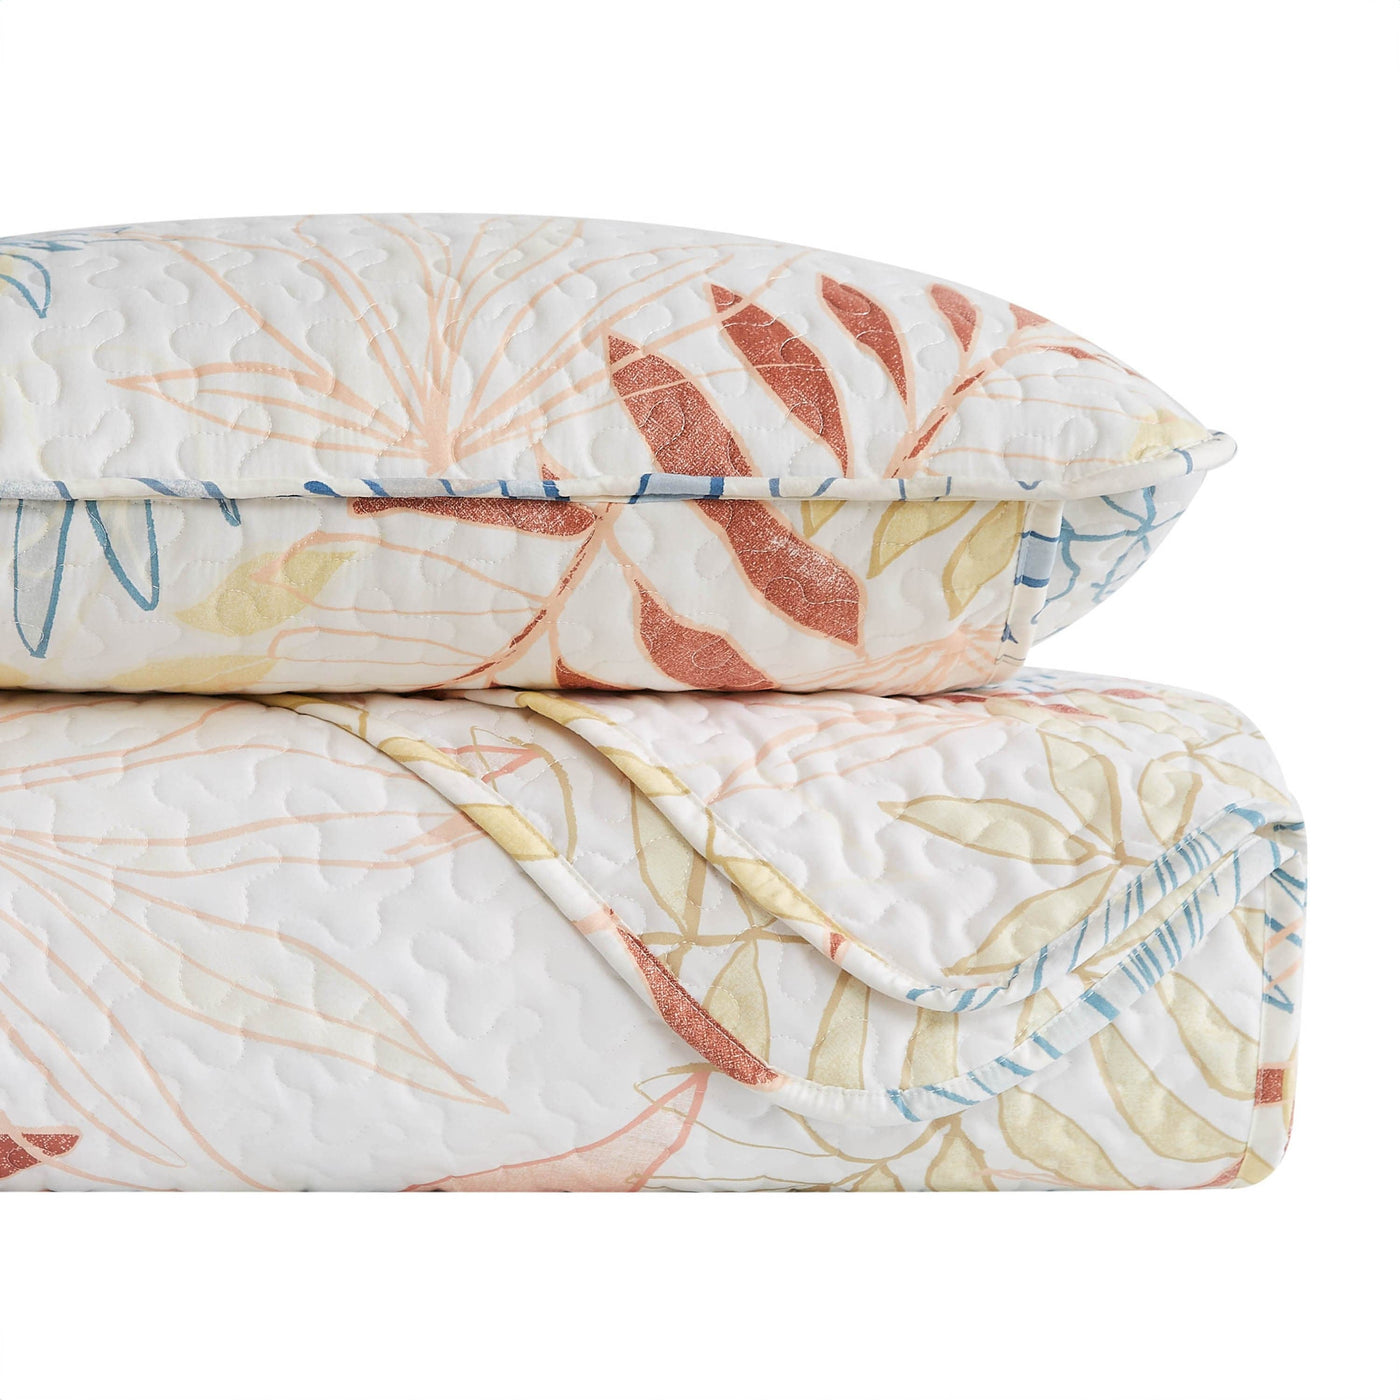 Stack Image of Tropic Leaf Quilt Set in cream#color_tropic-leaf-cream